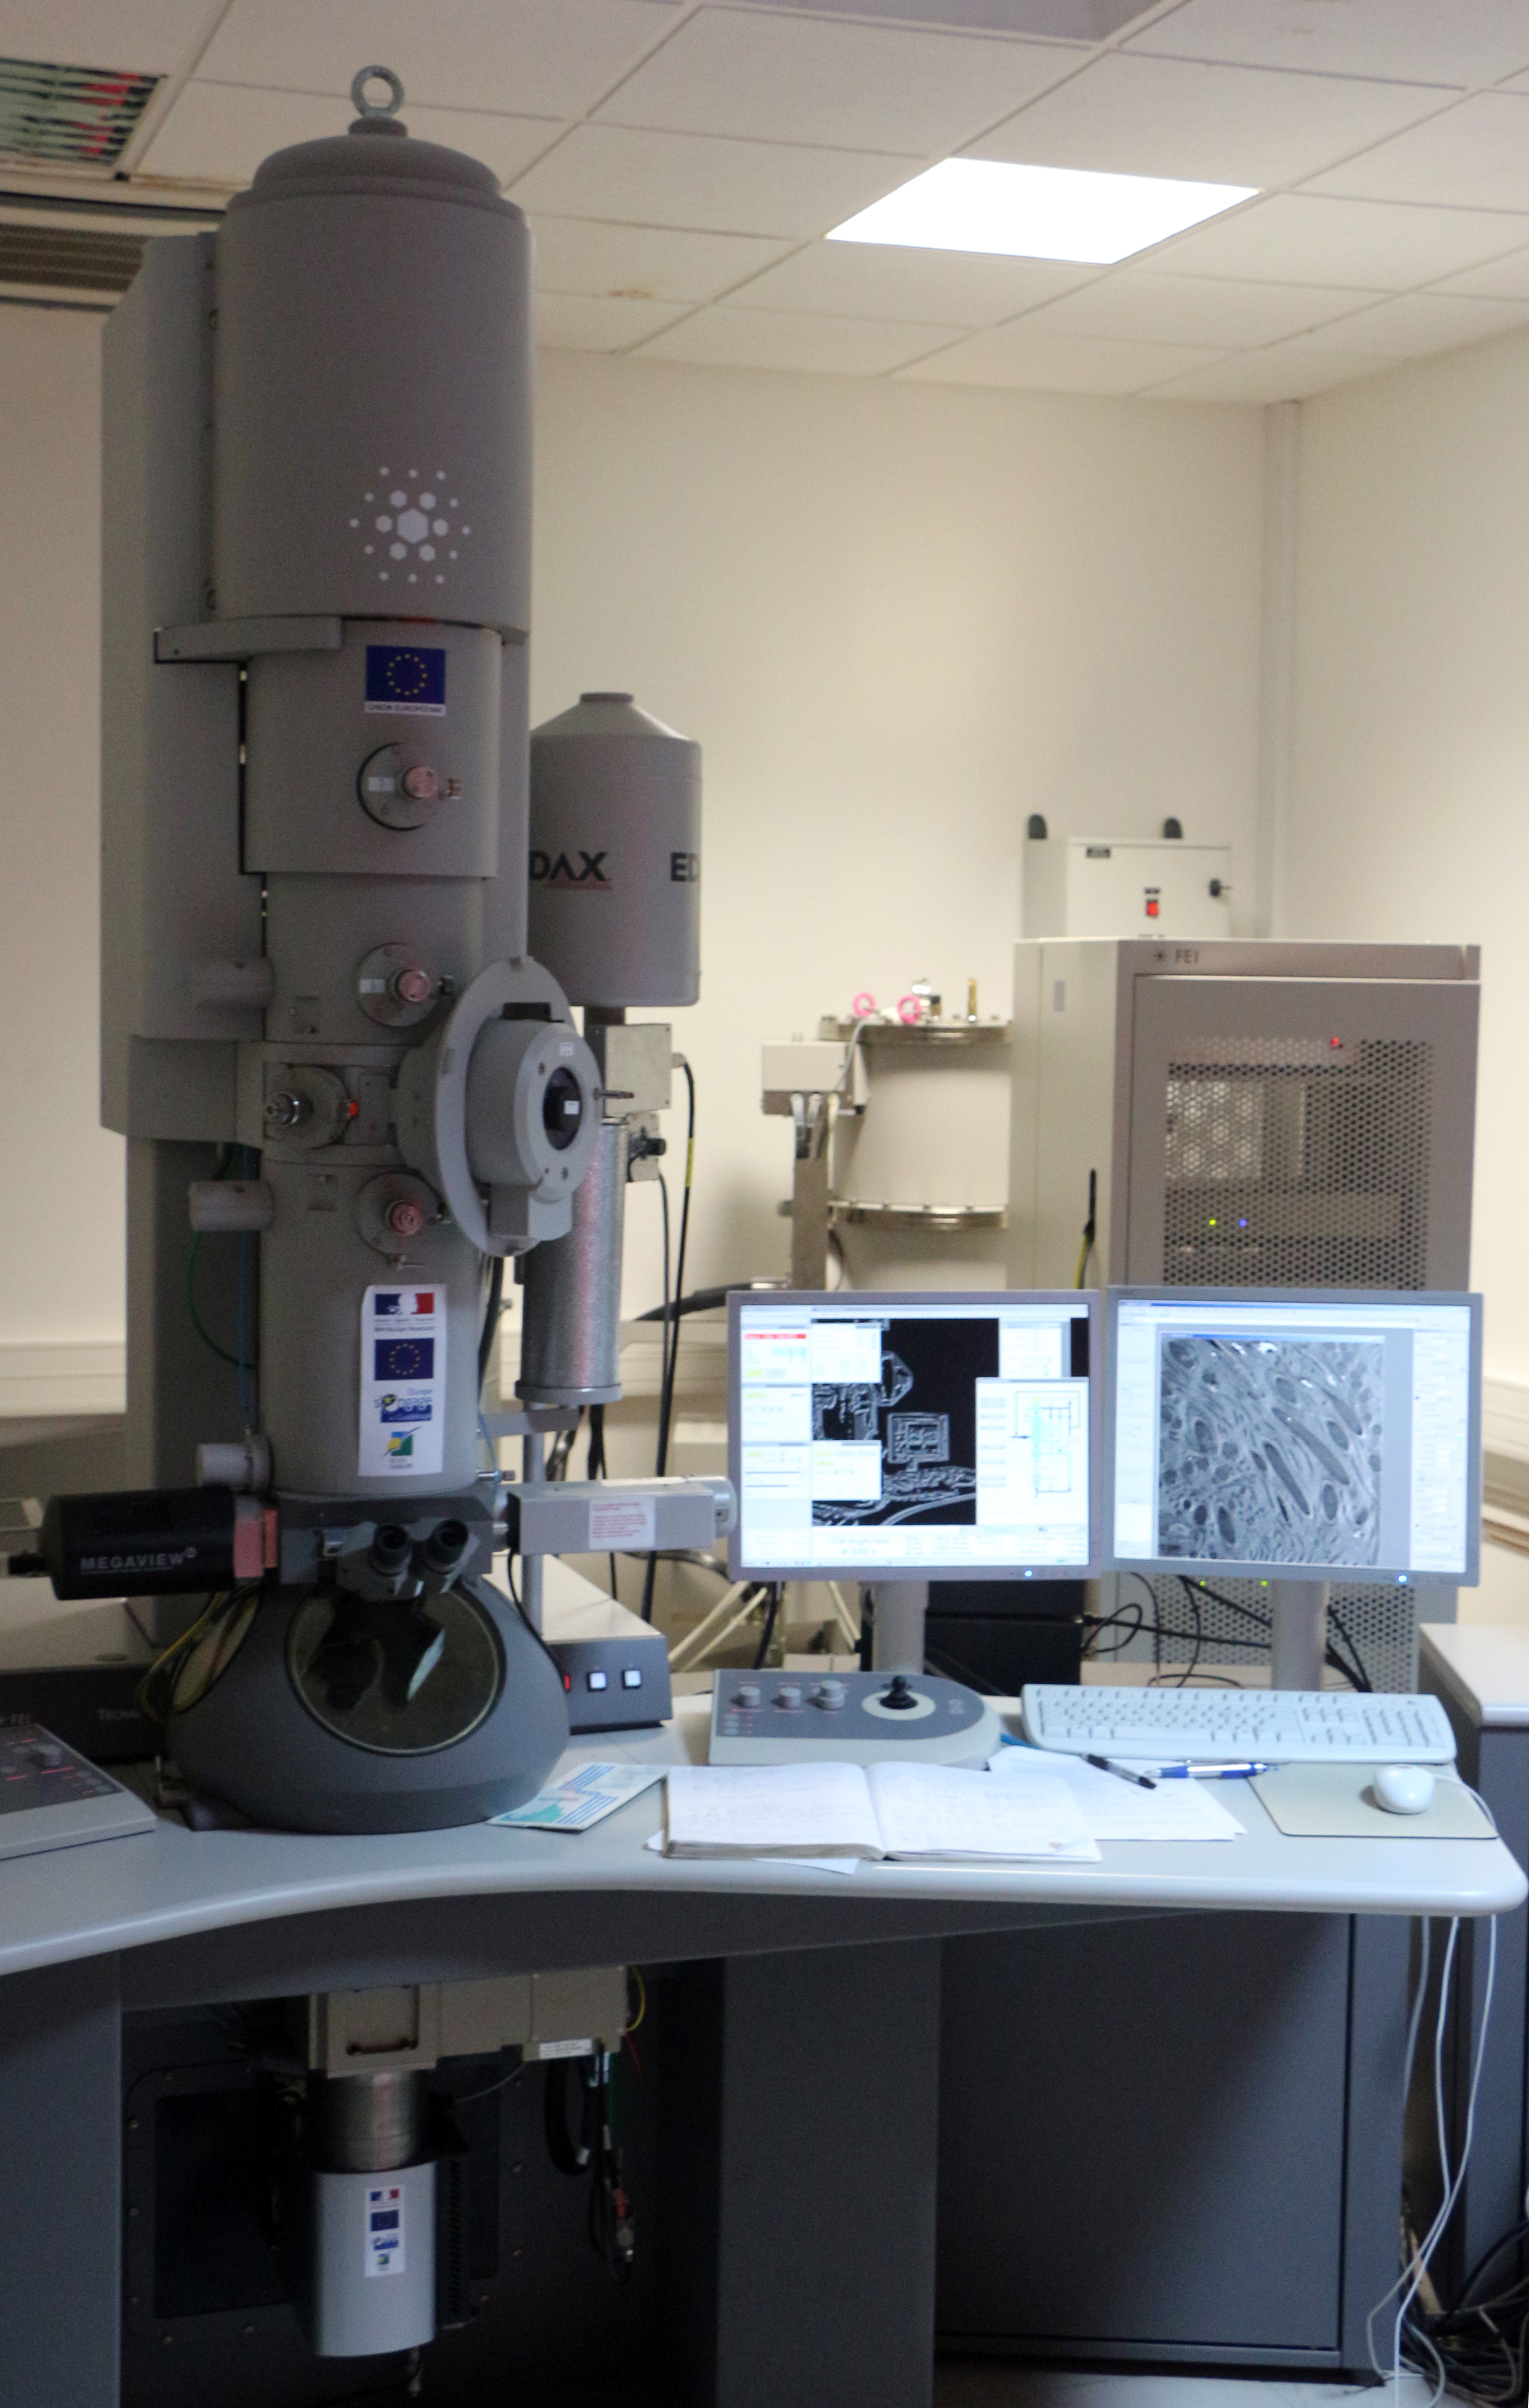 Microscope Électronique à Transmission - Centre Commun de